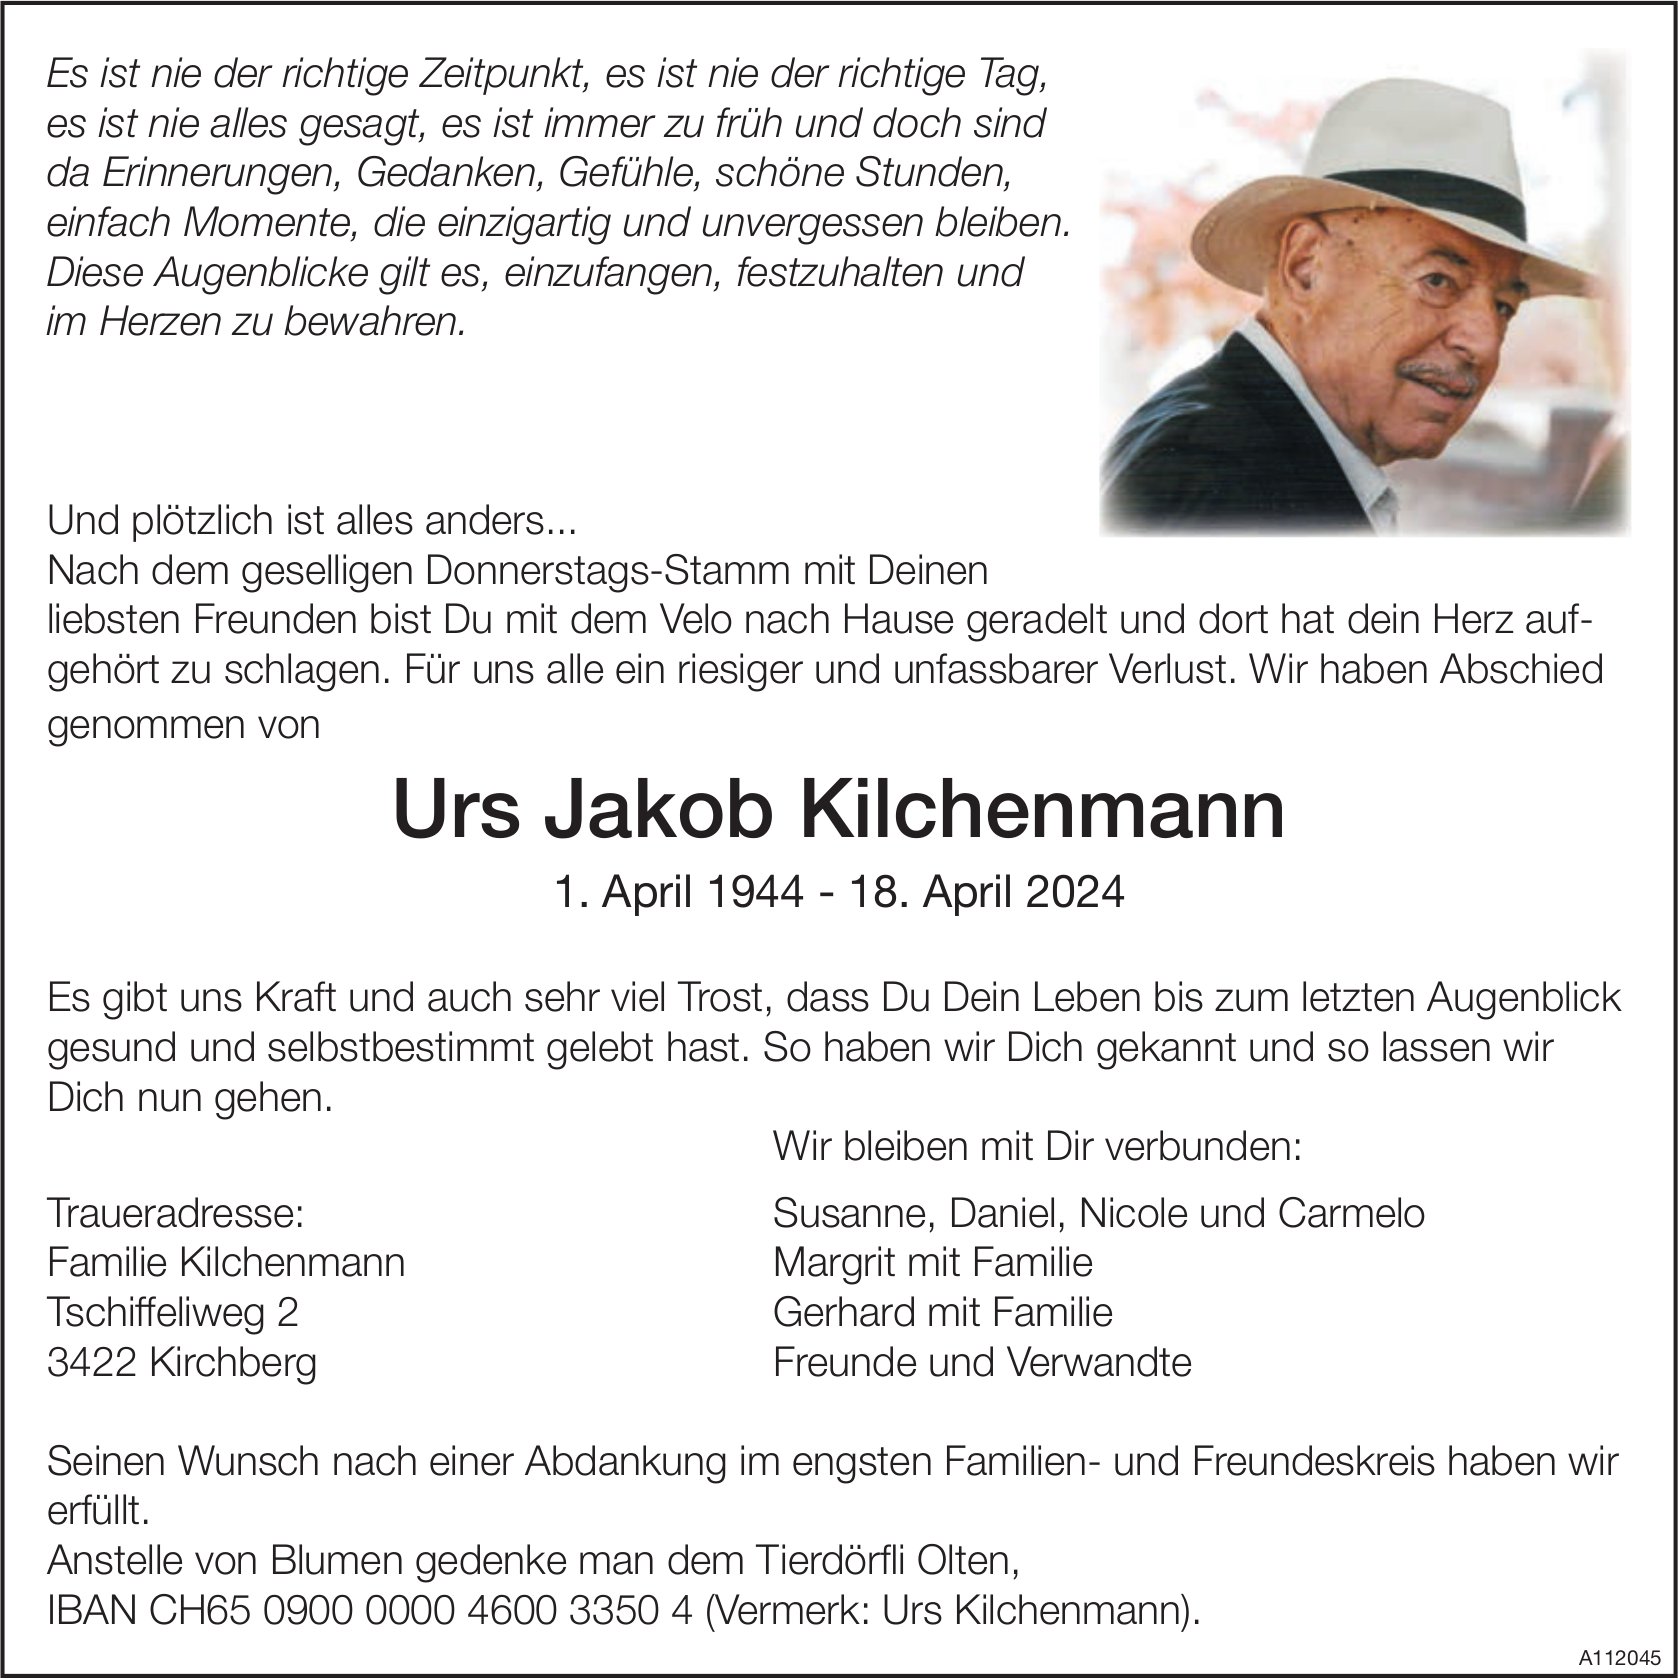 Urs Jakob Kilchenmann, April 2024 / TA